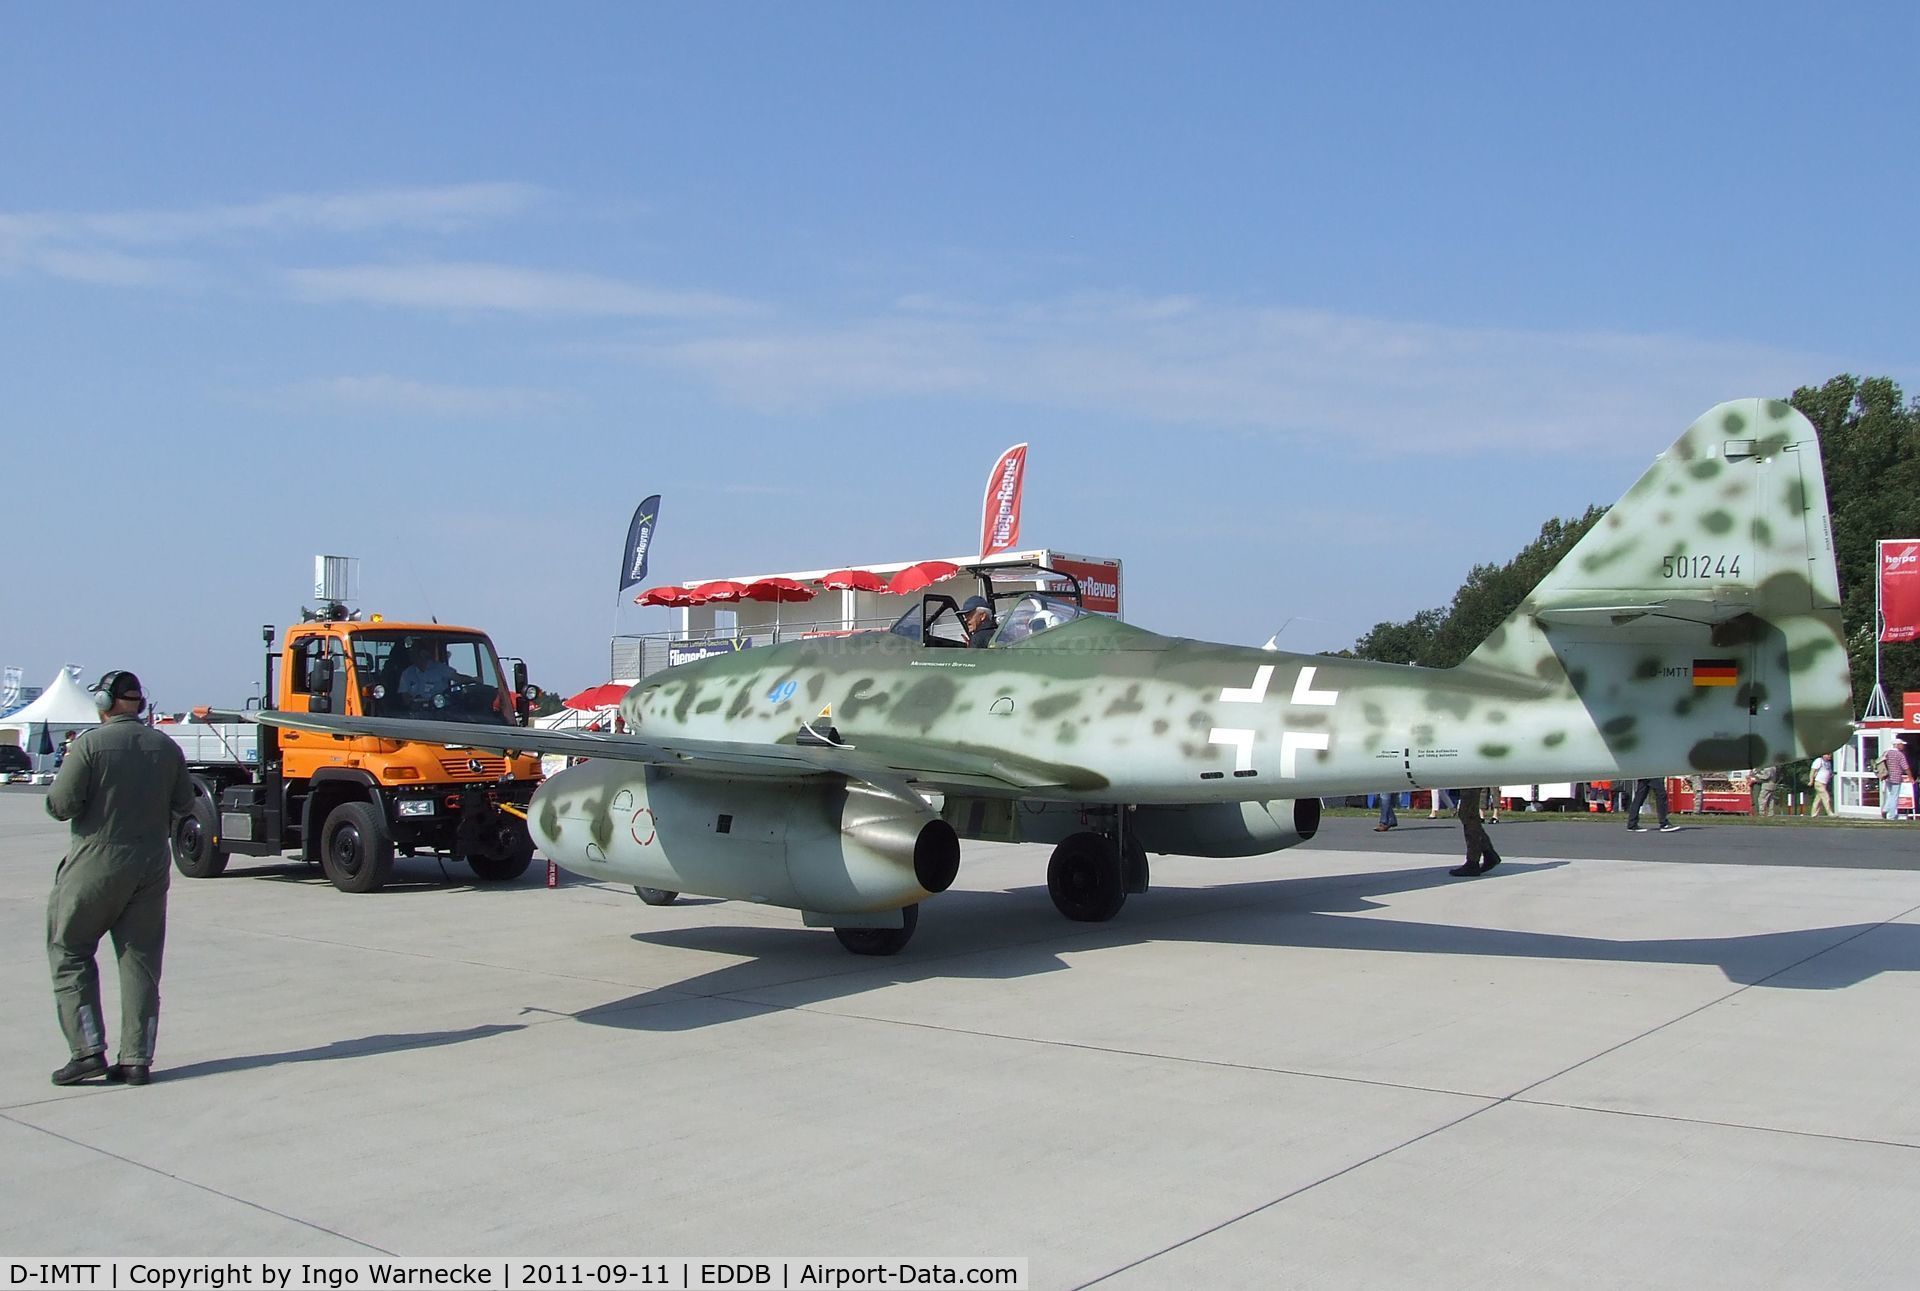 D-IMTT, 2005 Messerschmitt Me-262A-1C Schwalbe Replica C/N 501244, Messerschmitt (Hammer) Me 262A-1C Replica at the ILA 2012, Berlin